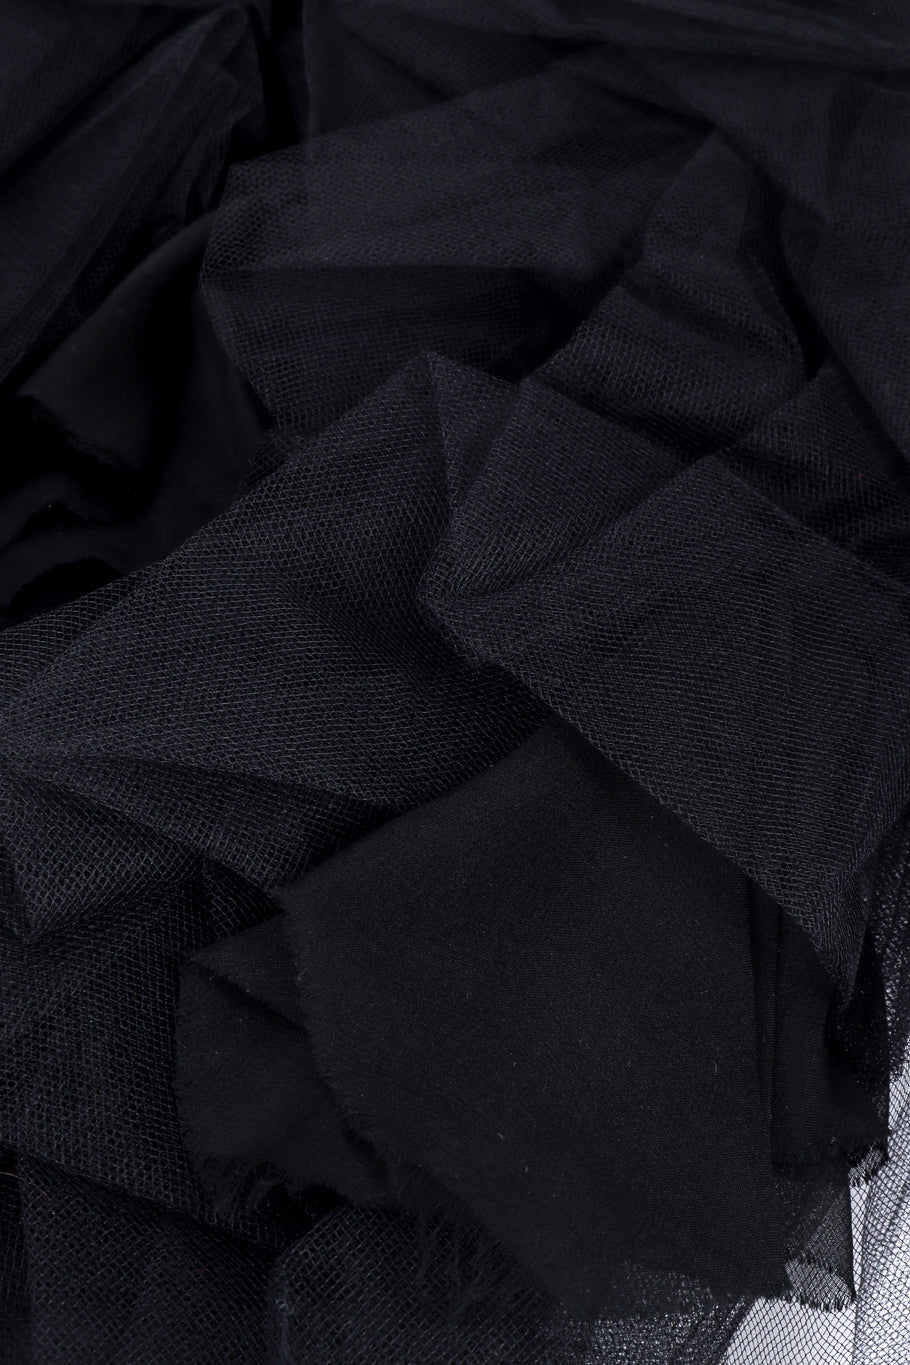 Salvatore Ferragamo Ruched Tulle Skirt fabric closeup @recessla